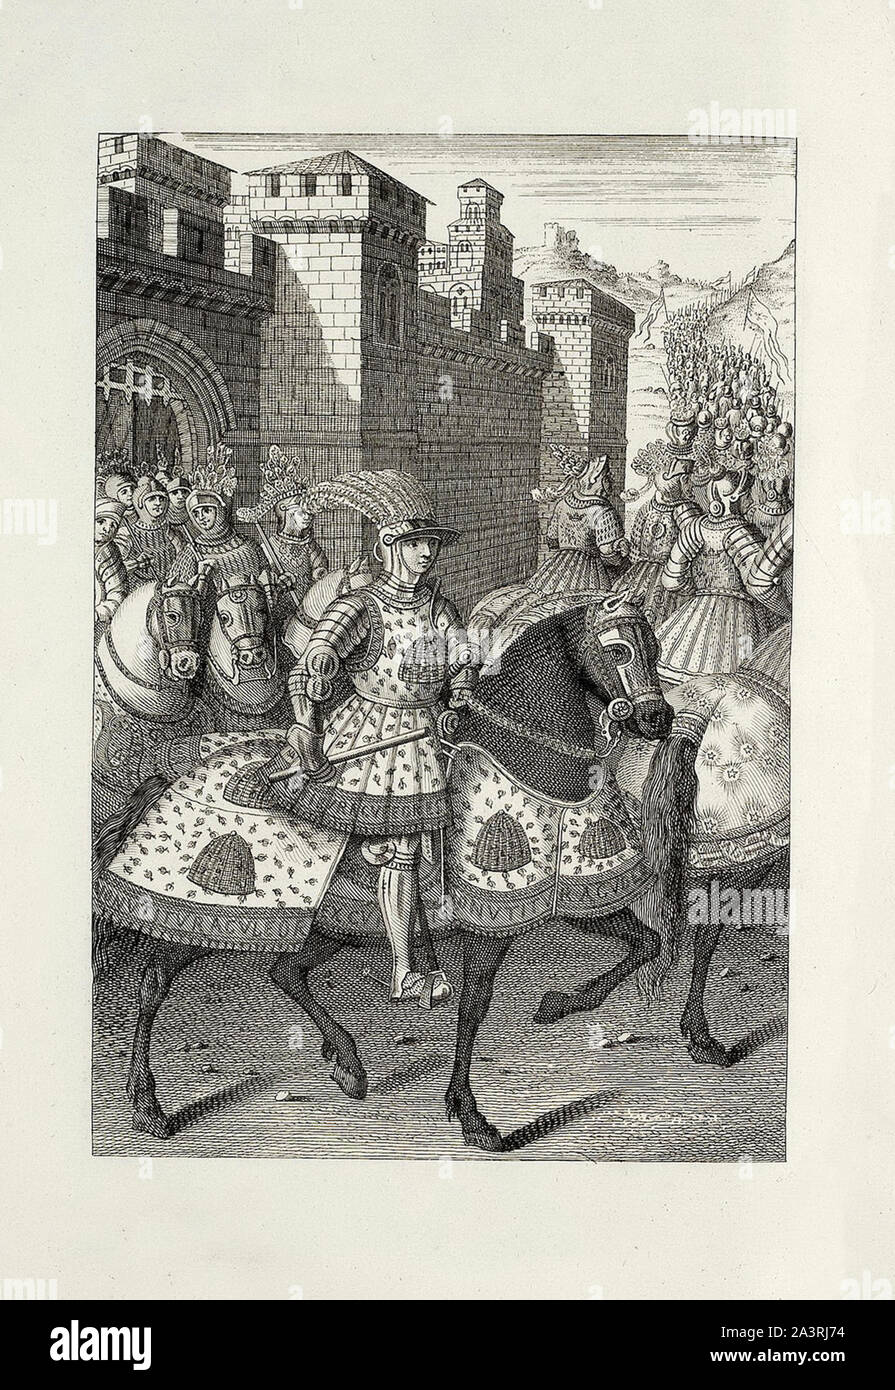 Ludwig XII lässt Alexandria de la Pailleagainst der Genuesischen Truppen. Mittelalterliche kriege Frankreichs in Italien. Louis XII (1462 - 1515), war König von Frankreich aus Stockfoto